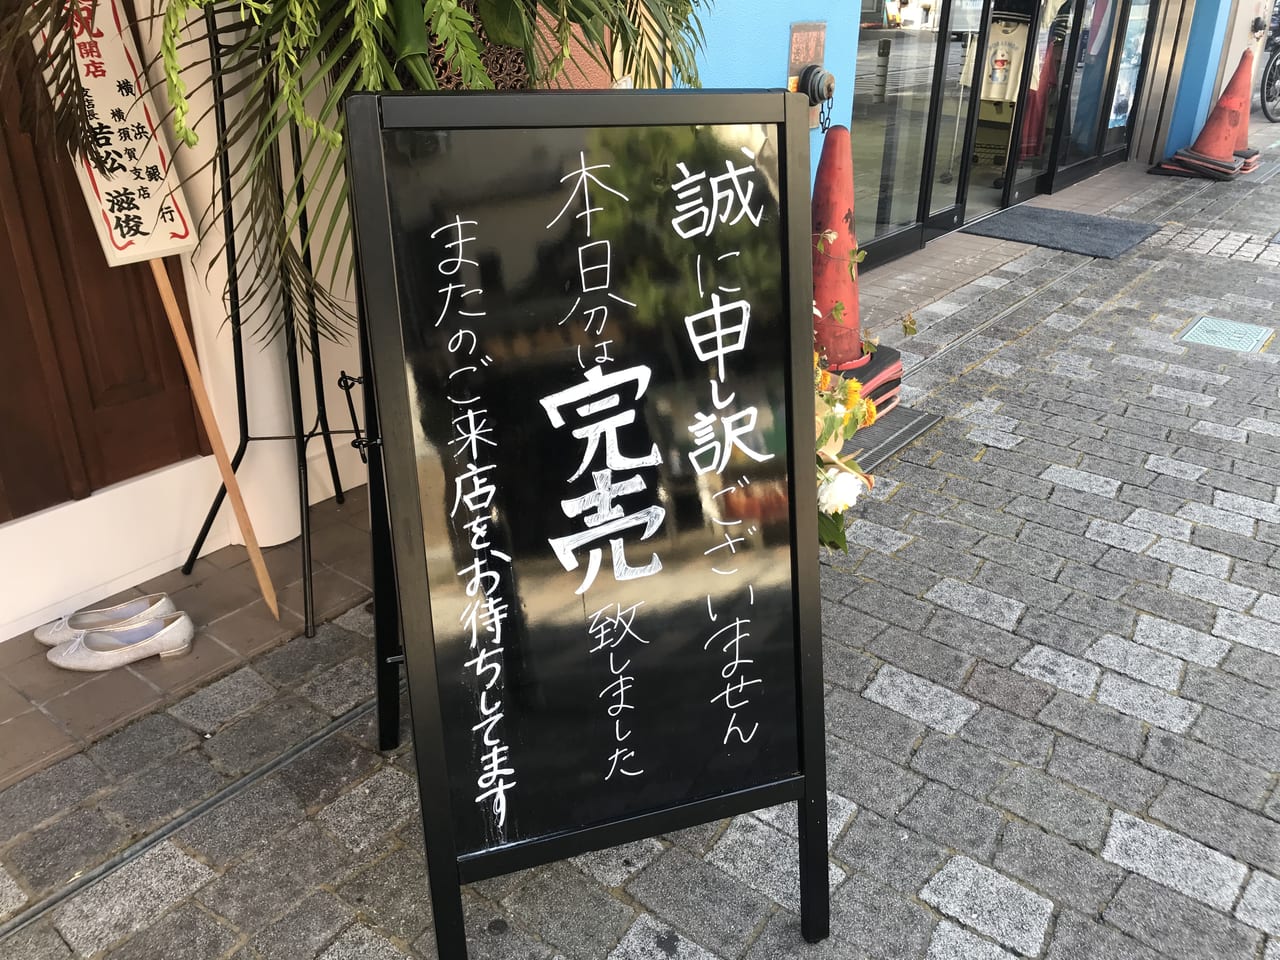 横須賀市 高級食パン専門店 ちょっと待ってぇー がオープン オープン後の様子をお伝えします 号外net 横須賀市 三浦市